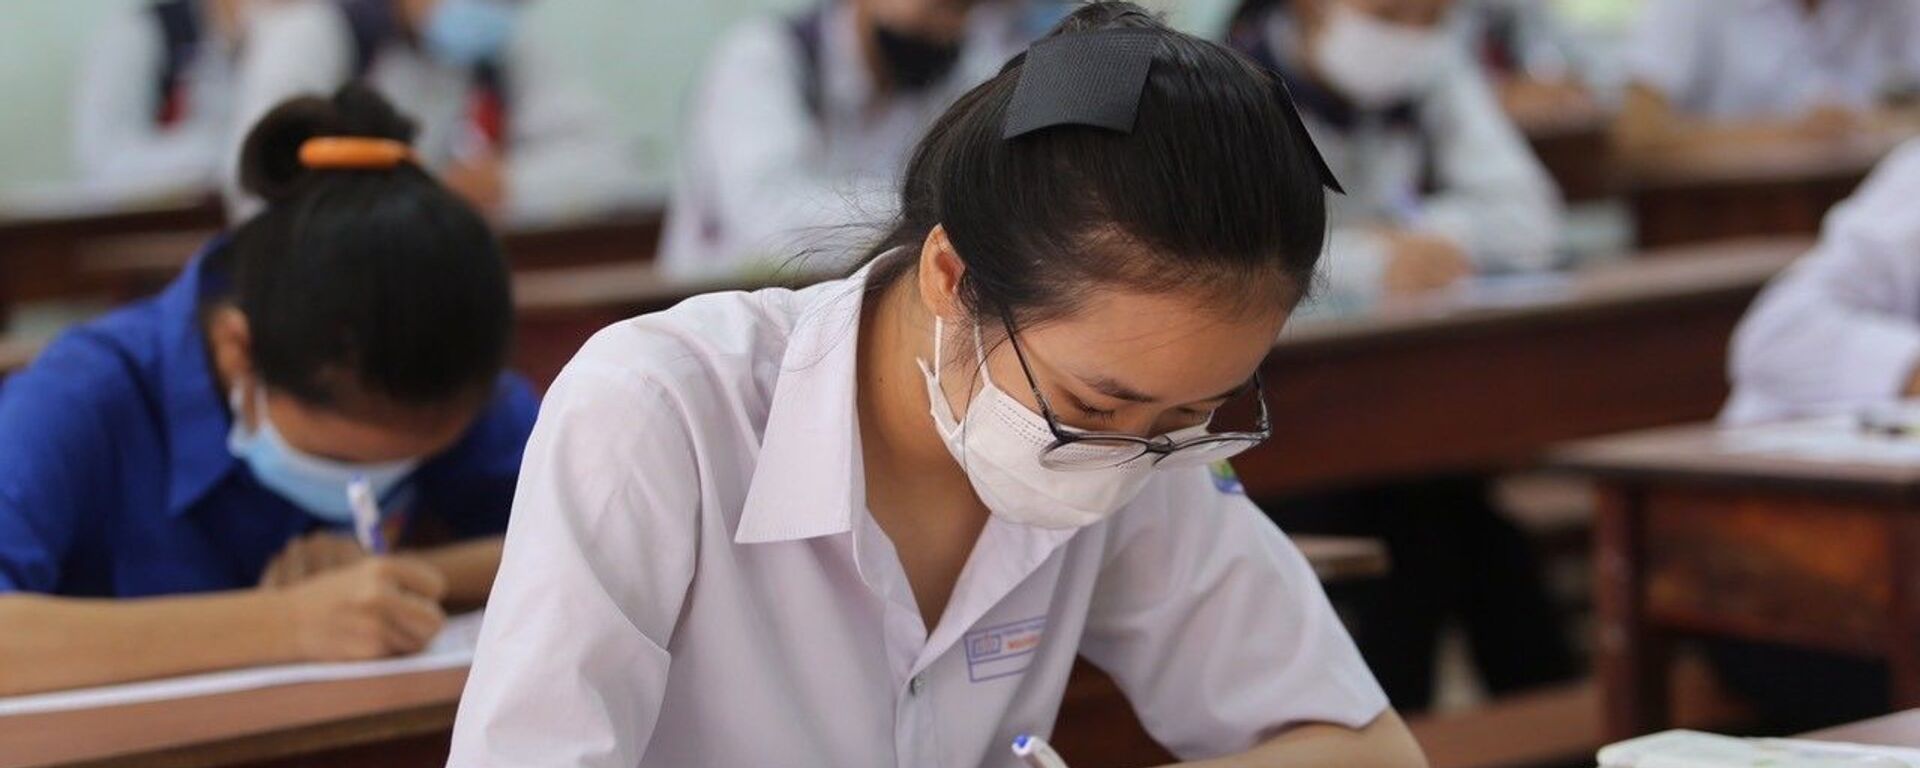 Kỳ thi Tốt nghiệp THPT năm 2021 tại Gia Lai kết thúc an toàn, nghiêm túc, đúng quy chế. - Sputnik Việt Nam, 1920, 31.08.2021